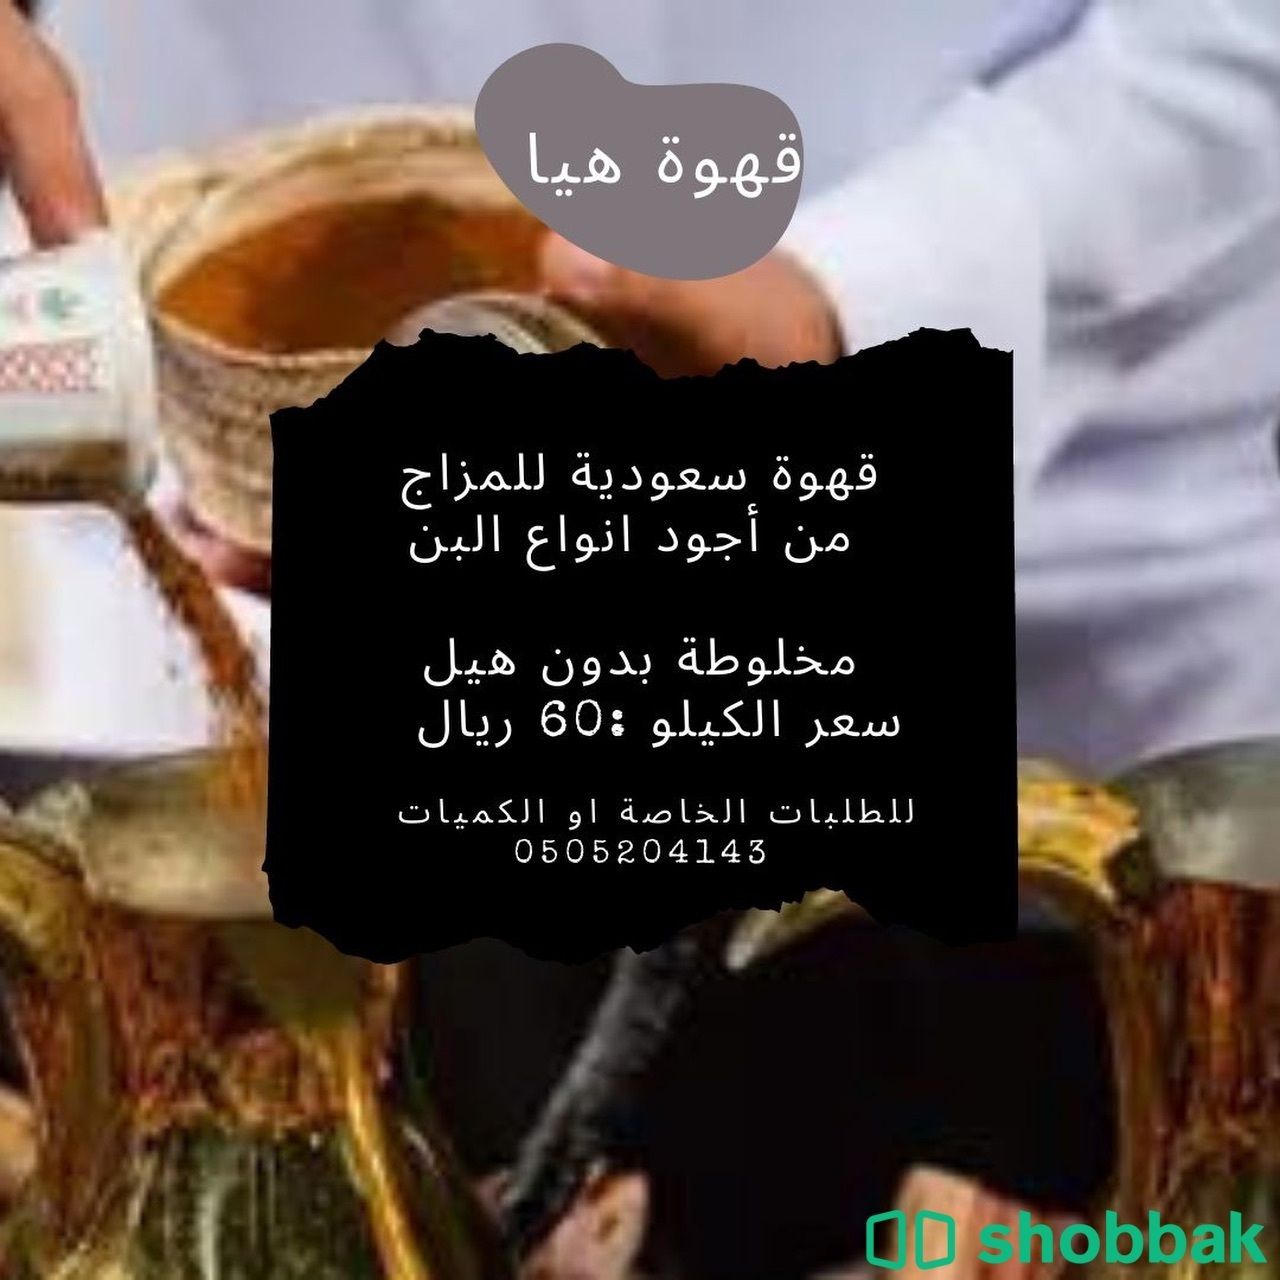 قهوة سعودية فاخرة Shobbak Saudi Arabia